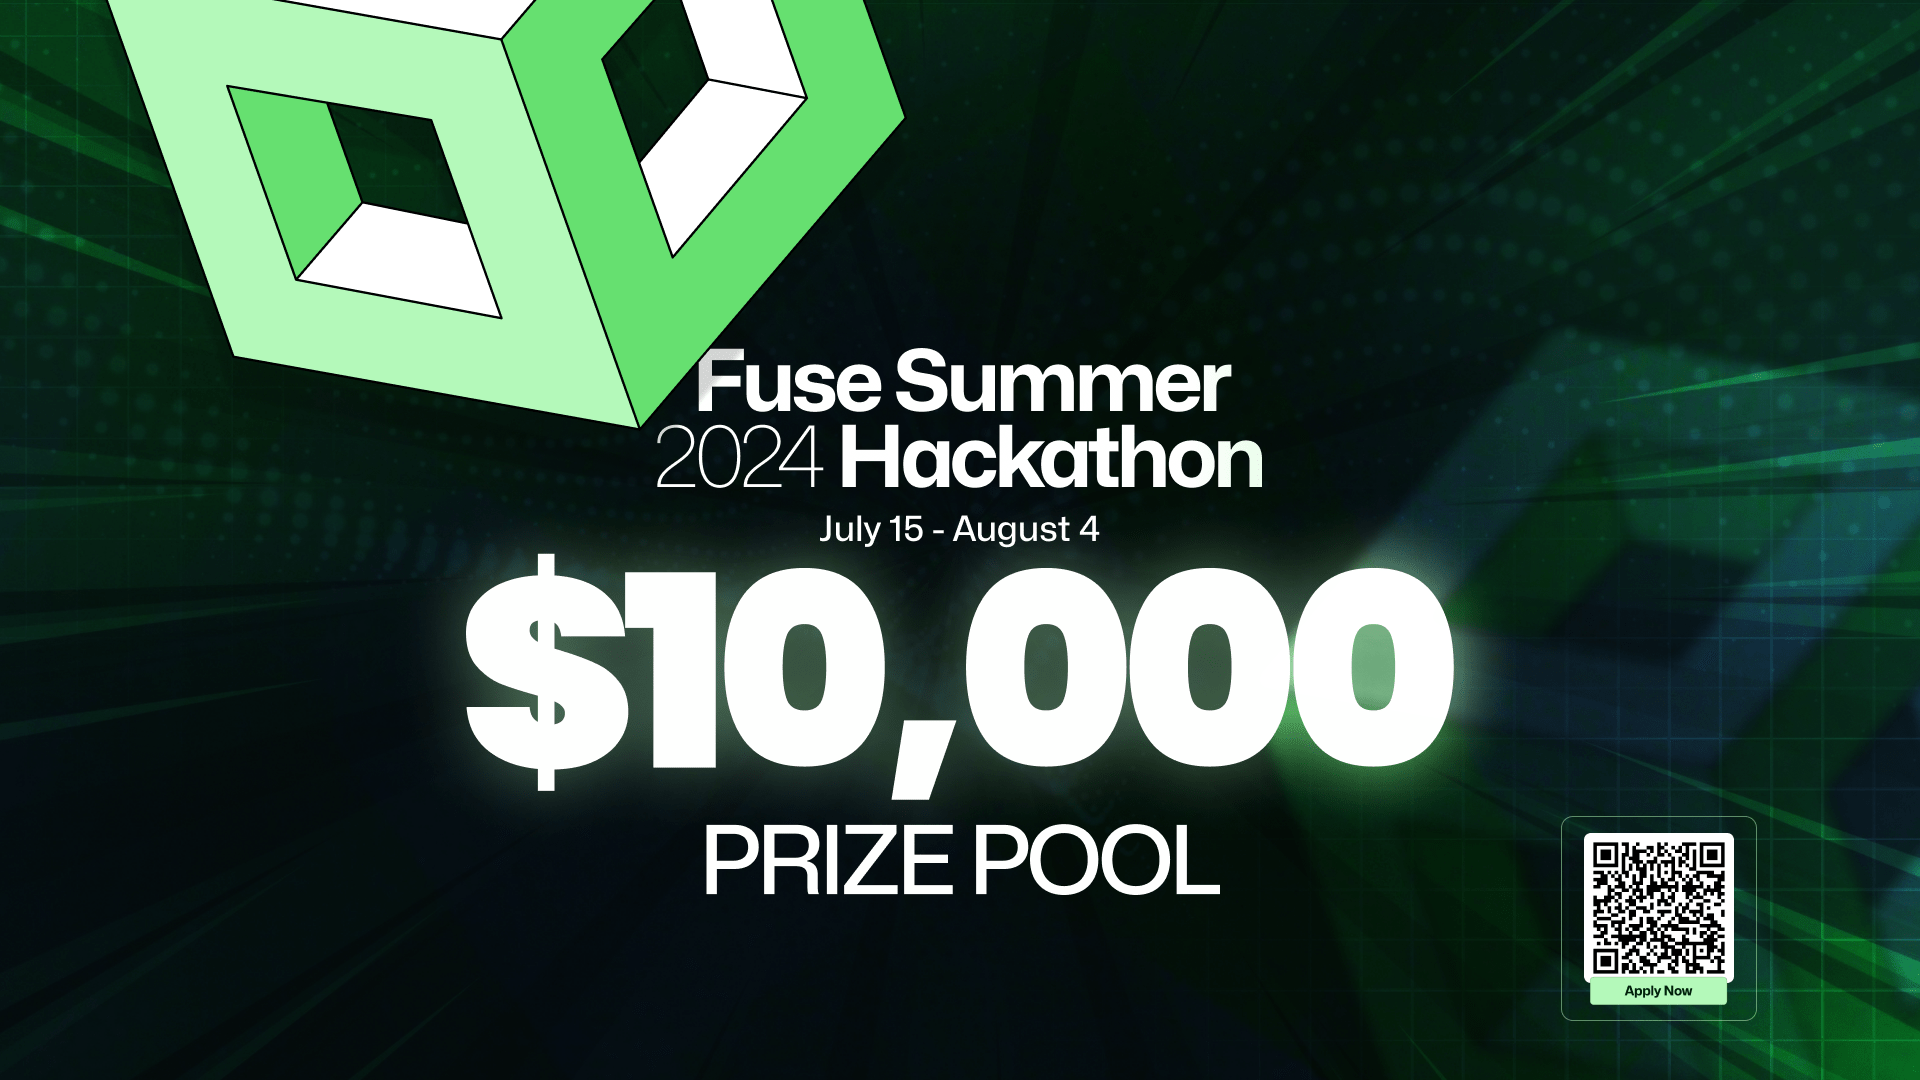 Fuse Summer Hackathon 2024